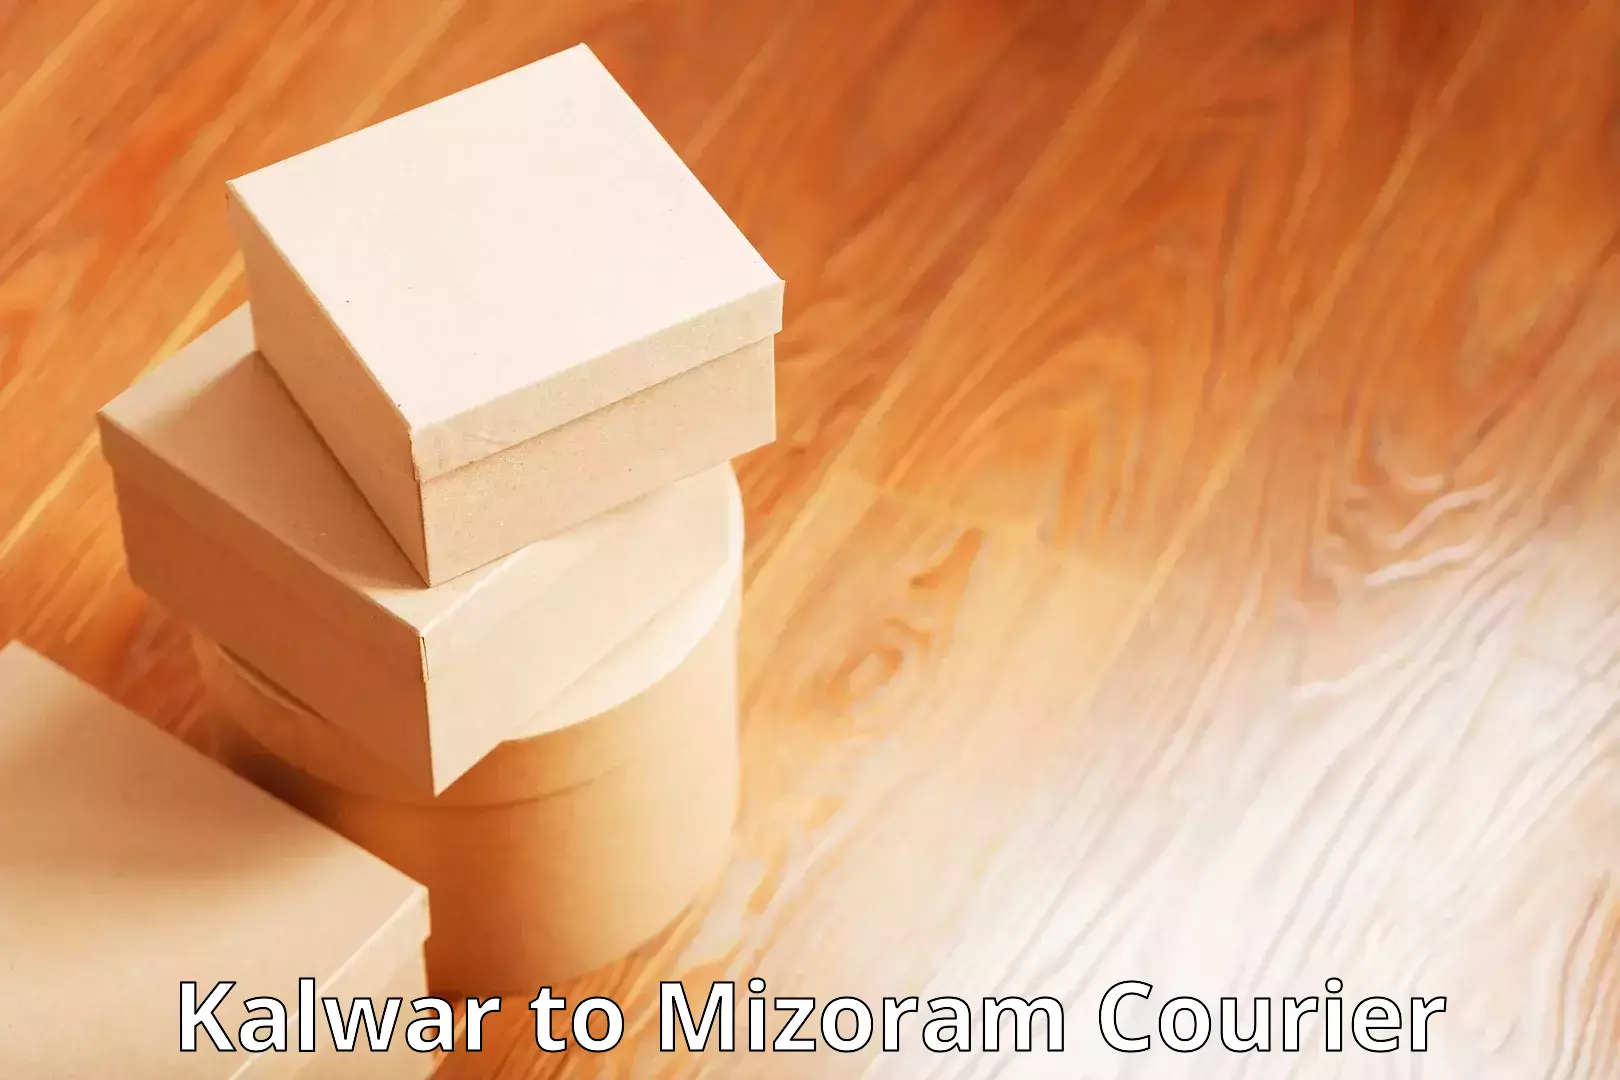 24/7 courier service Kalwar to Mizoram